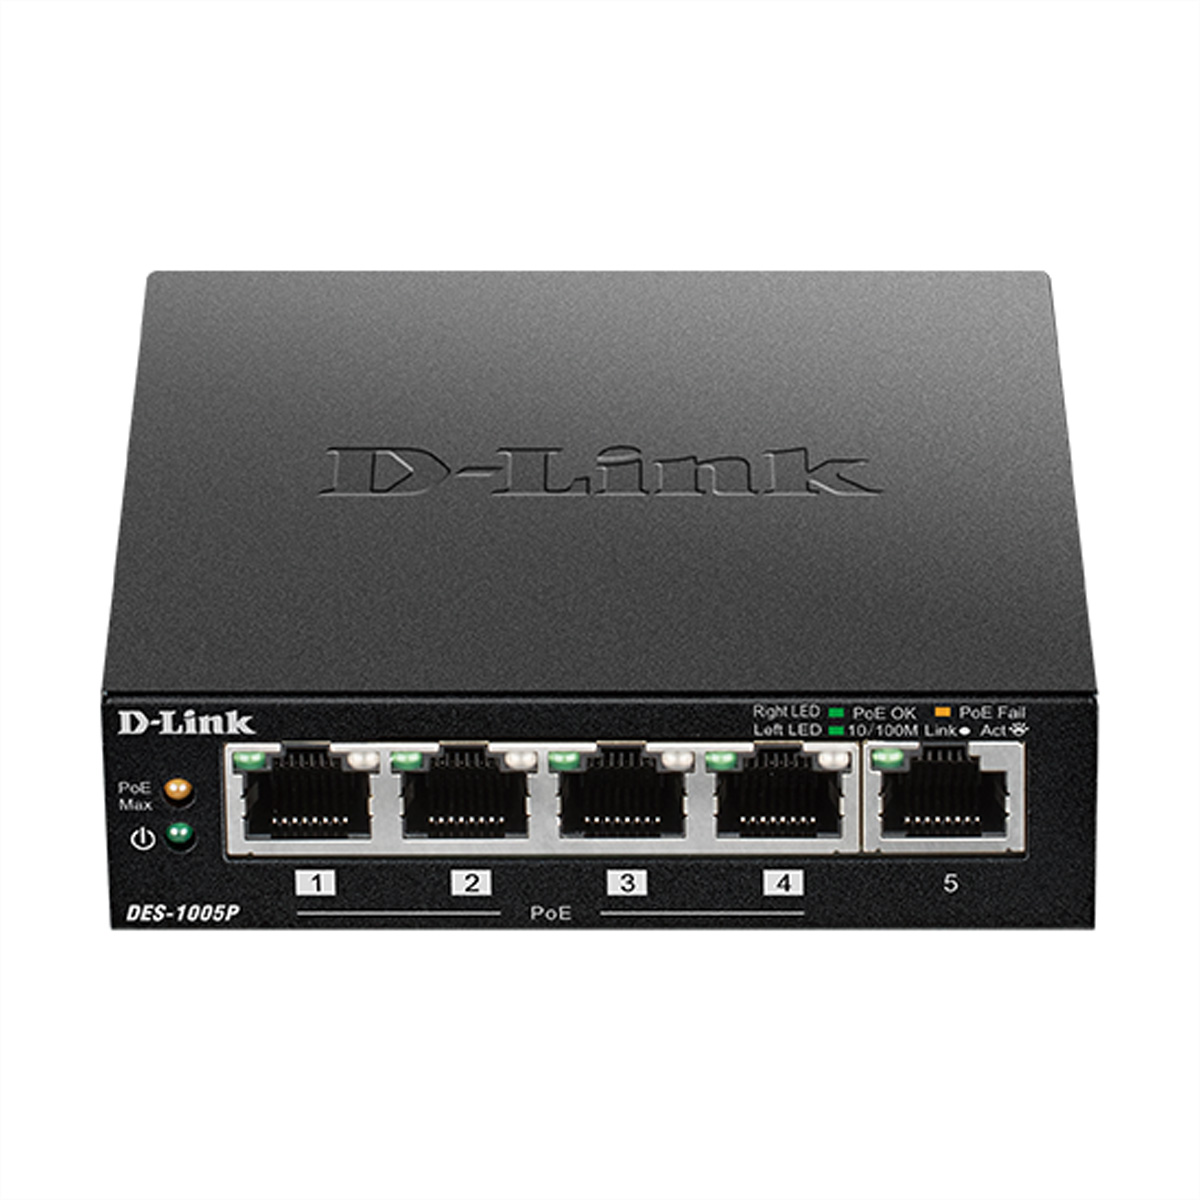 D-Link DES-1005P 5-port PoE Fast Ethernet Desktop Switch